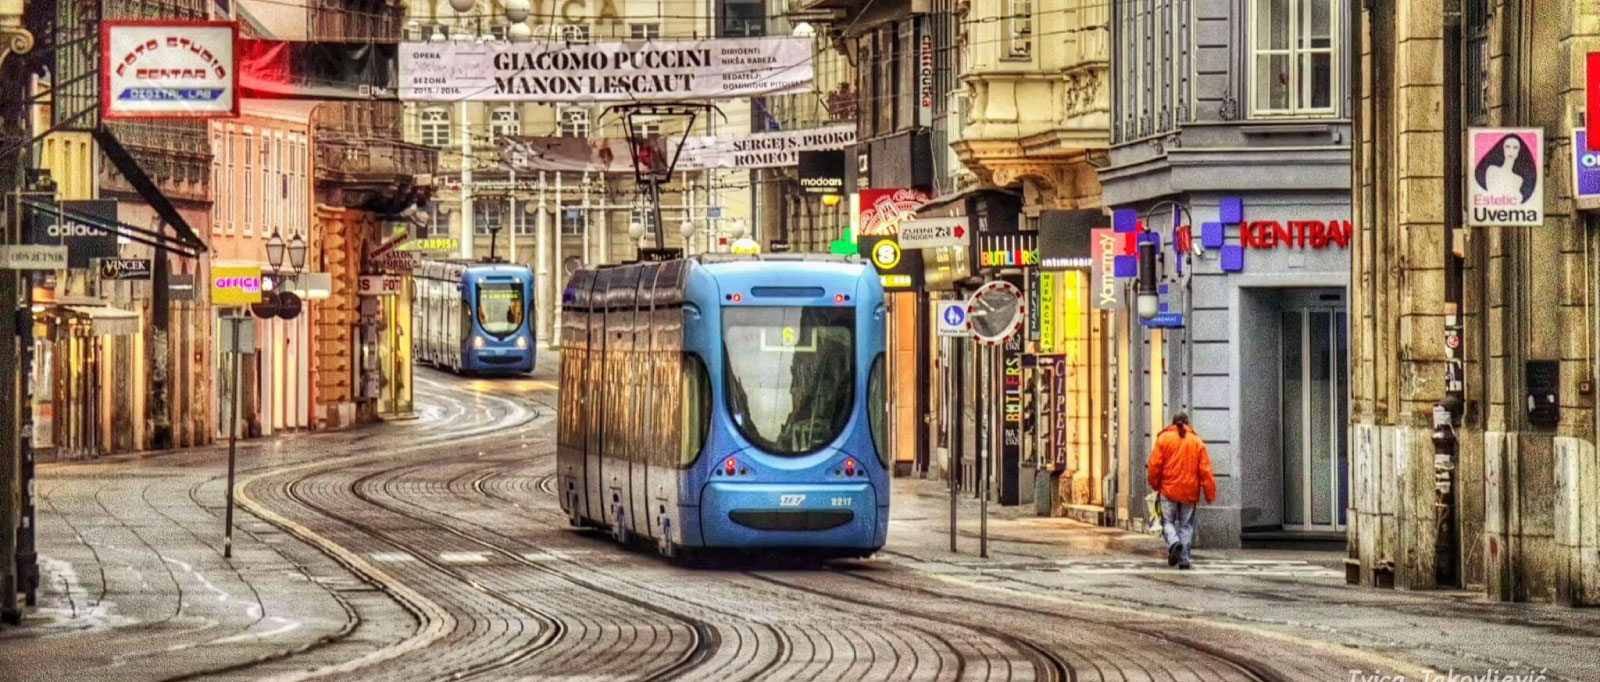 zaggreb-tram